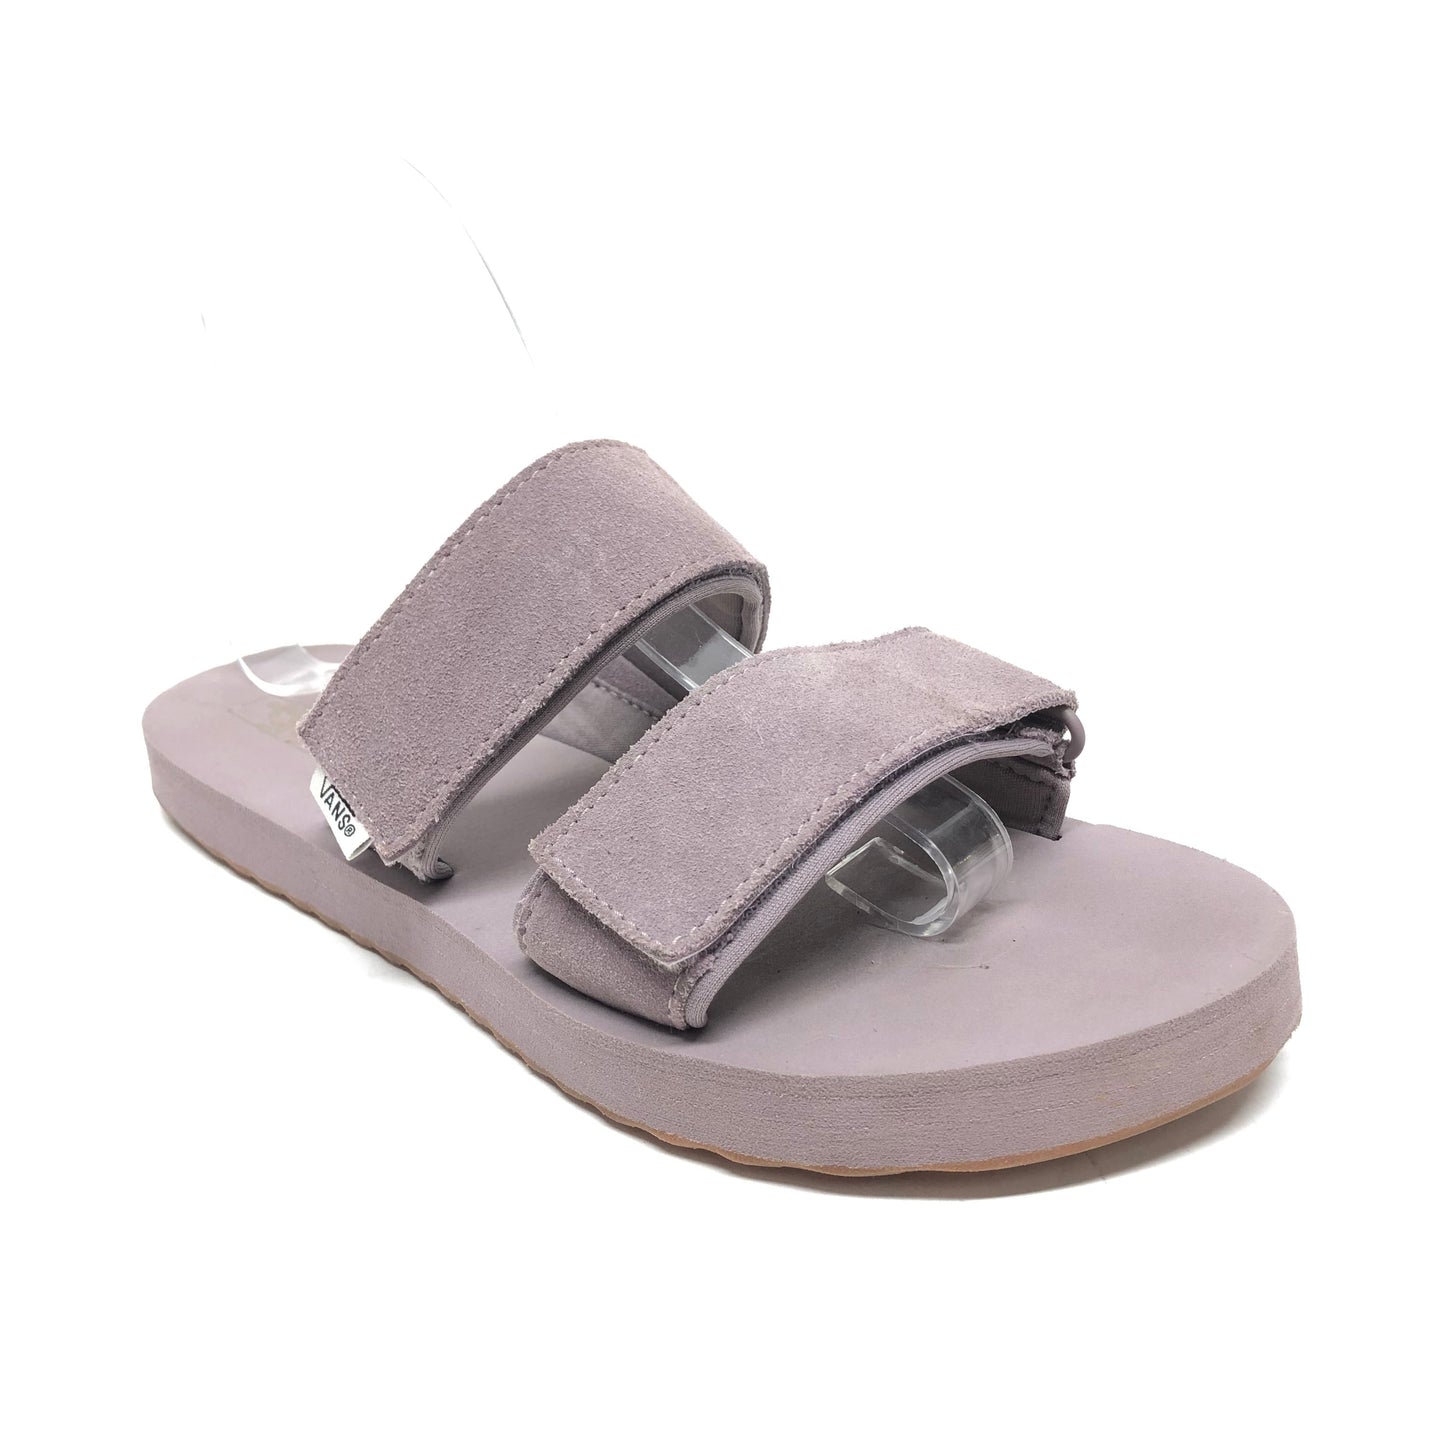 Sandals Flats By Vans  Size: 8